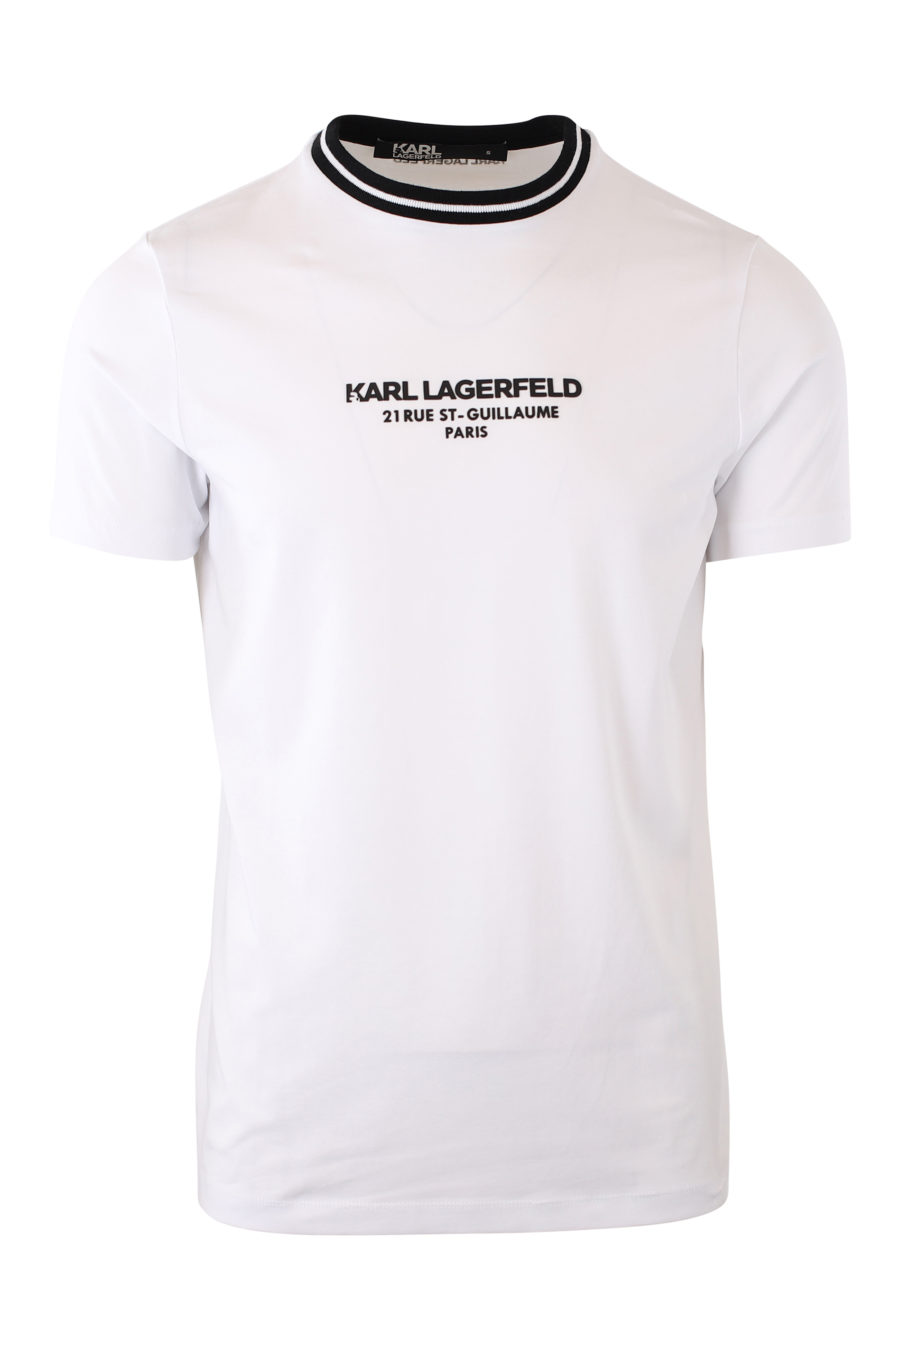 Camiseta blanca con cuello de rayas y logo negro en goma - IMG 2087